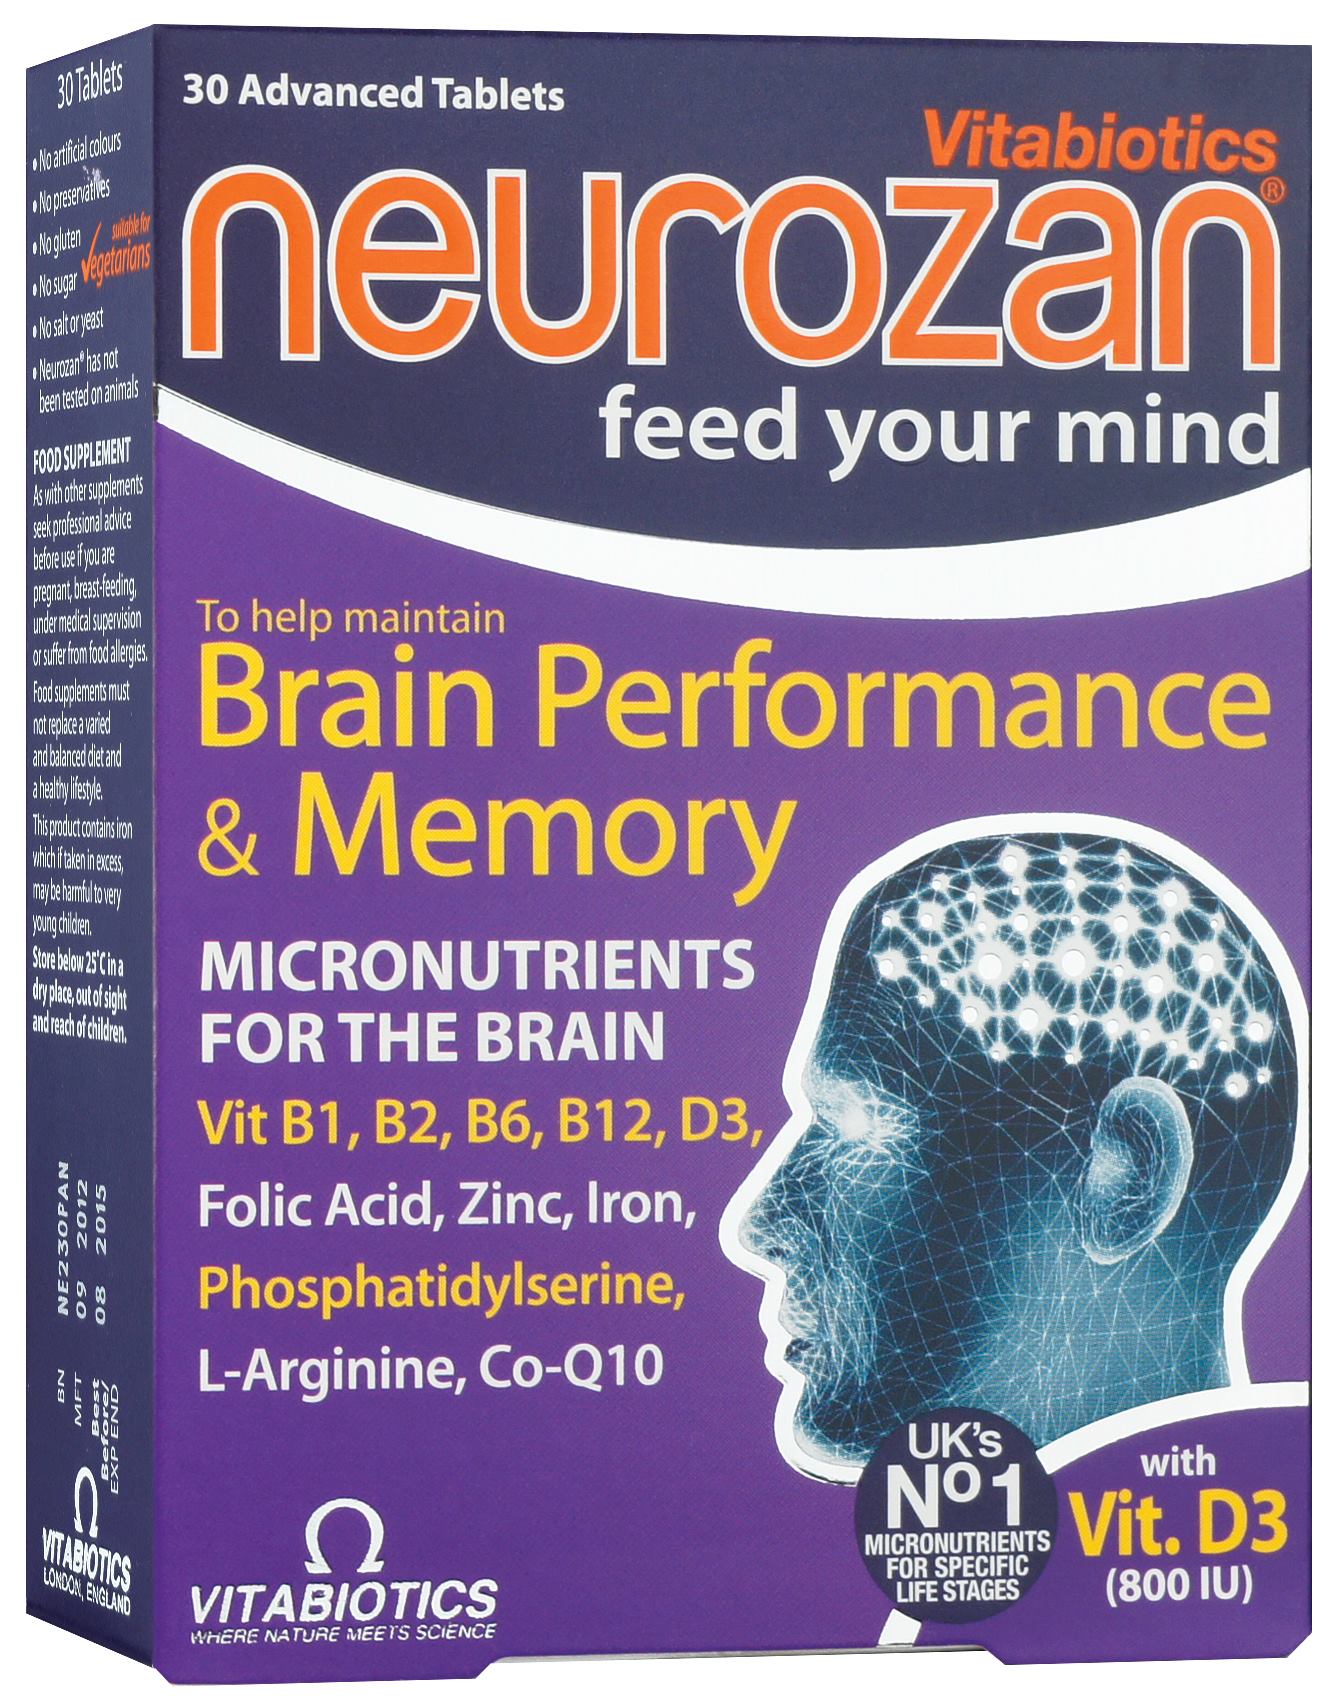 ნეუროზანი / Neurozan